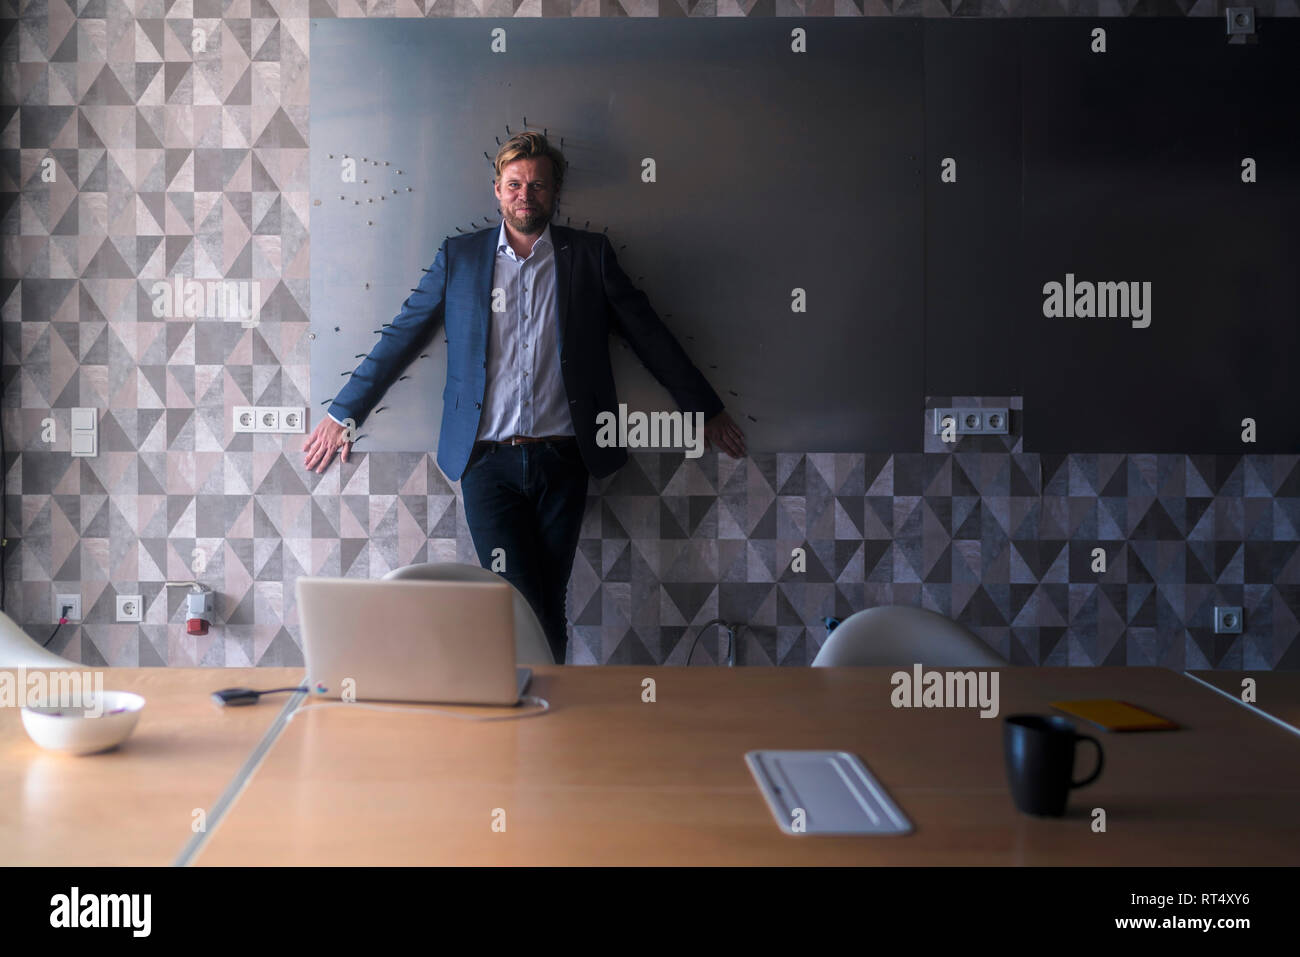 Imprenditore standiing nella sala riunioni con il dorso di un magnete a parete, incorniciato dalle frecce Foto Stock